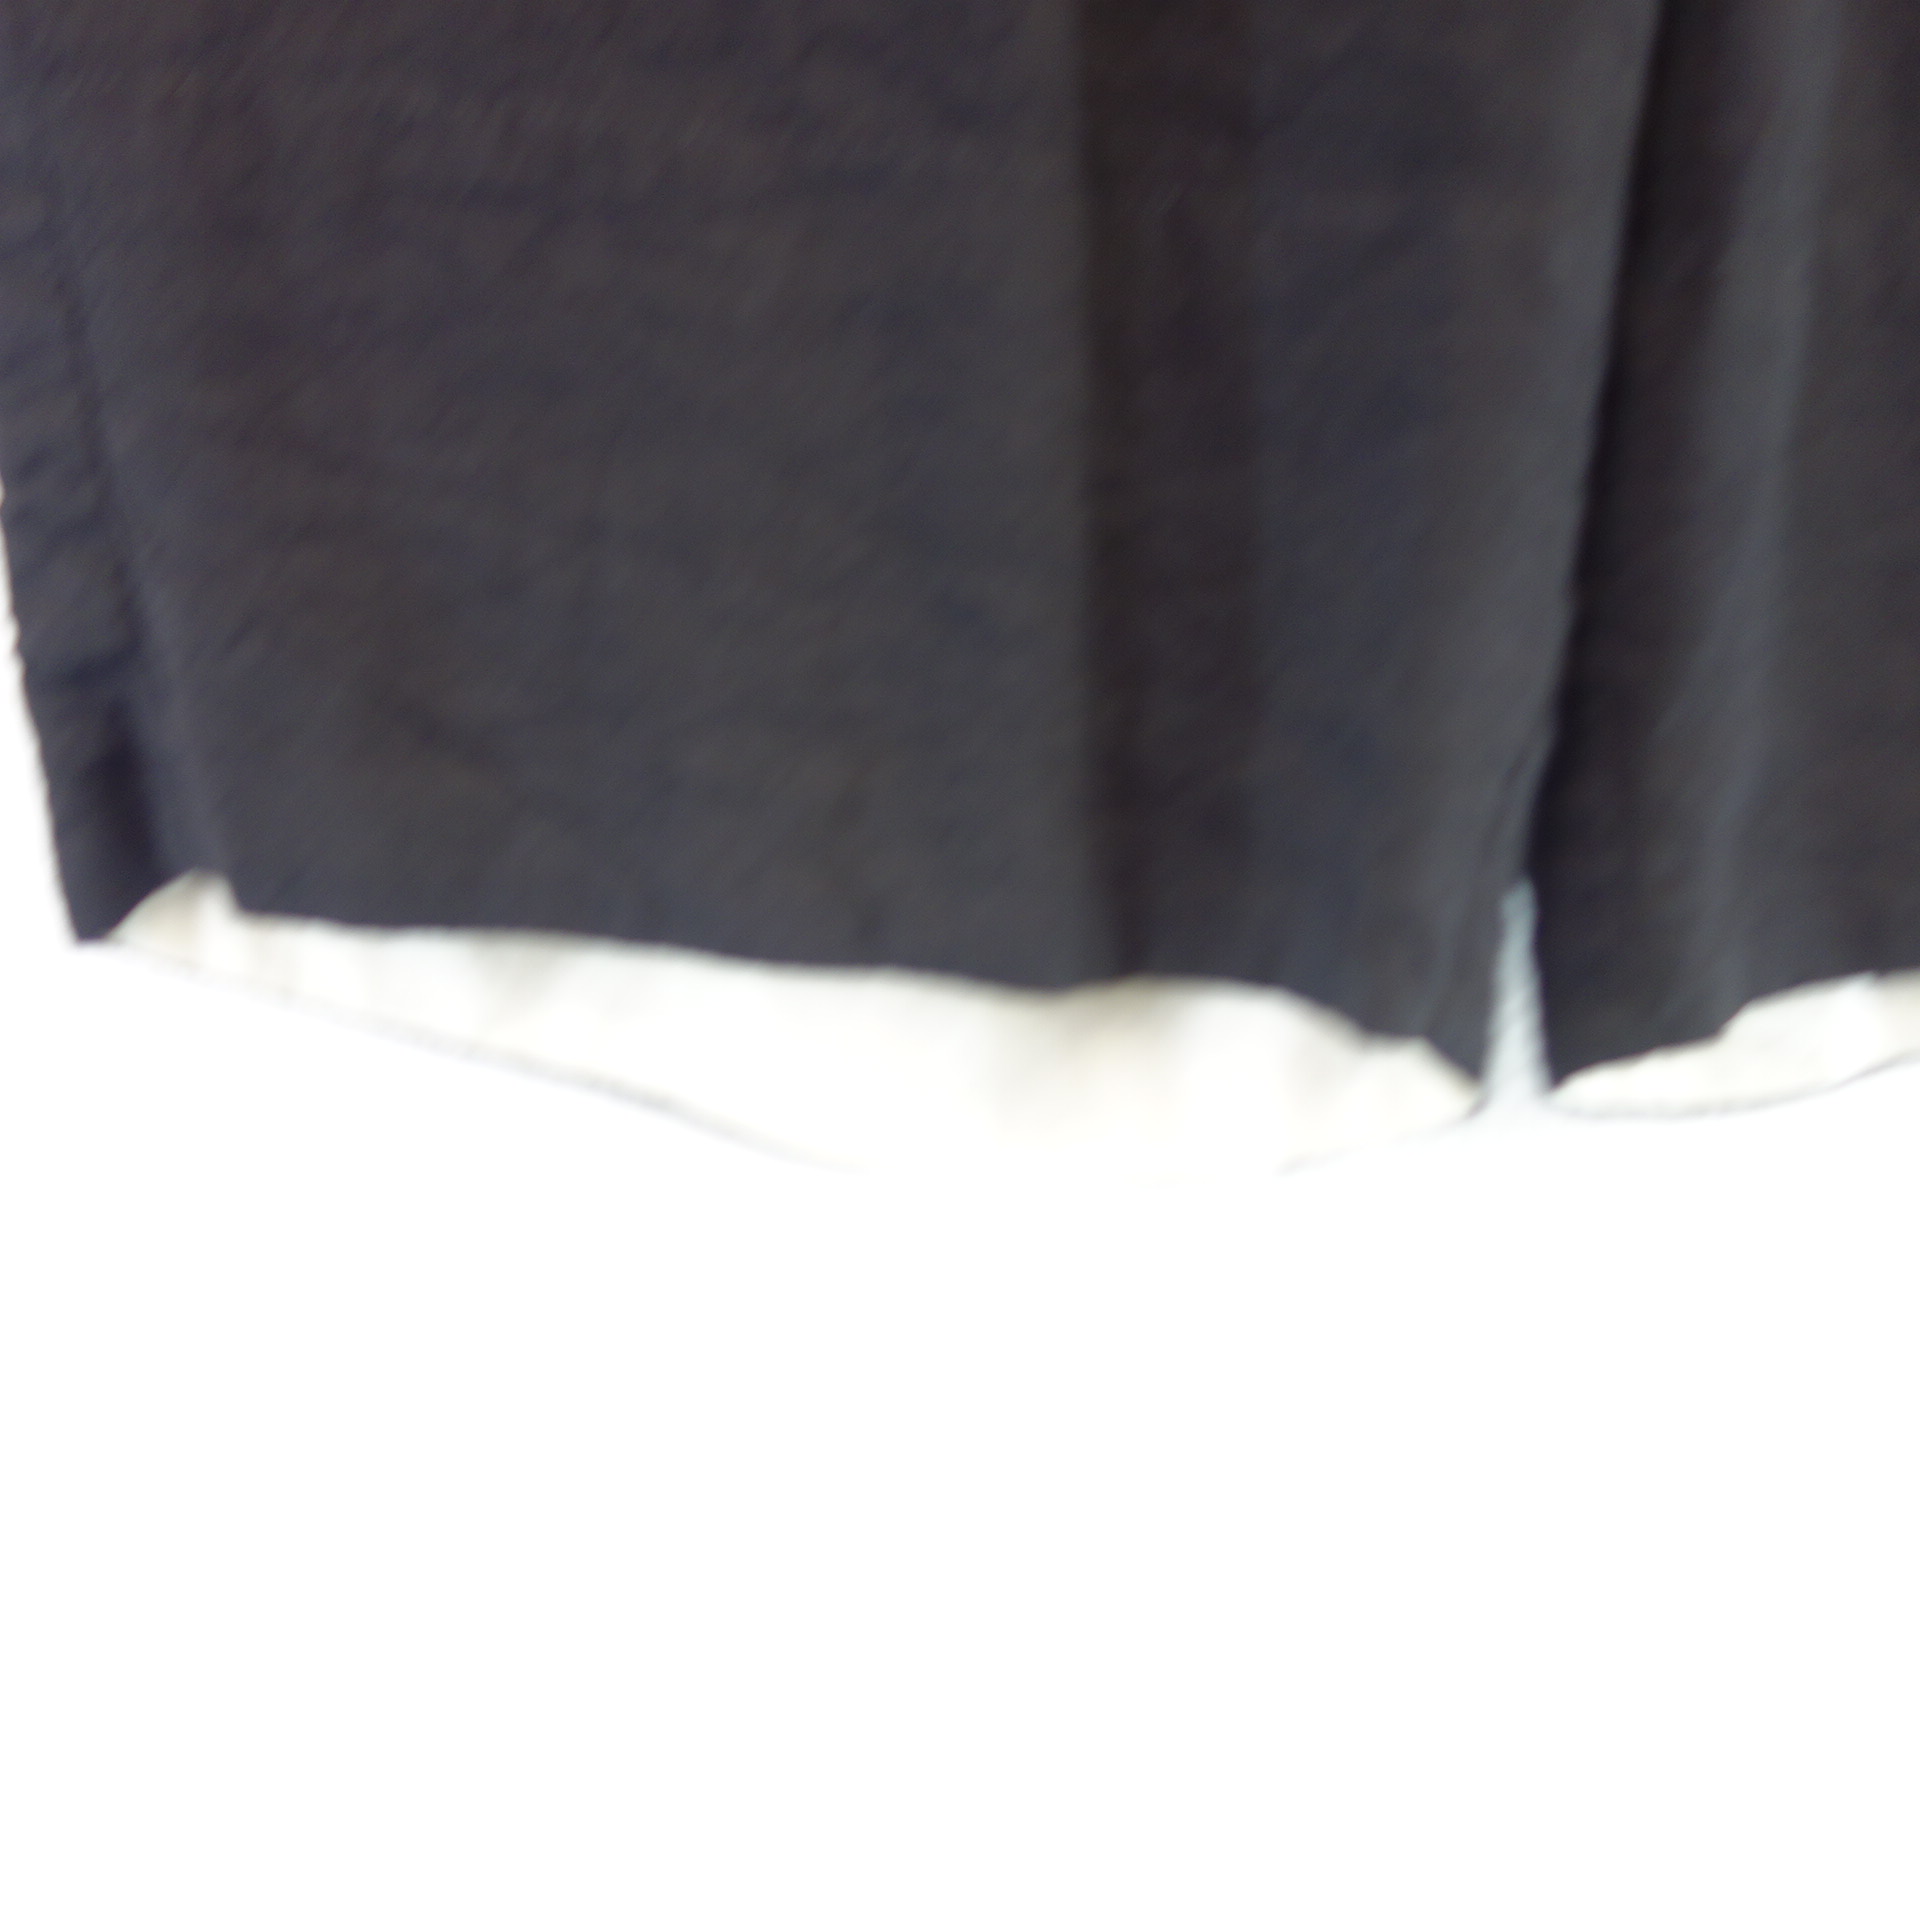 ANNETTE GÖRTZ Damen Hose Bermuda Stoffhose Schwarz mit Leinen Gr 40 Modell Kios